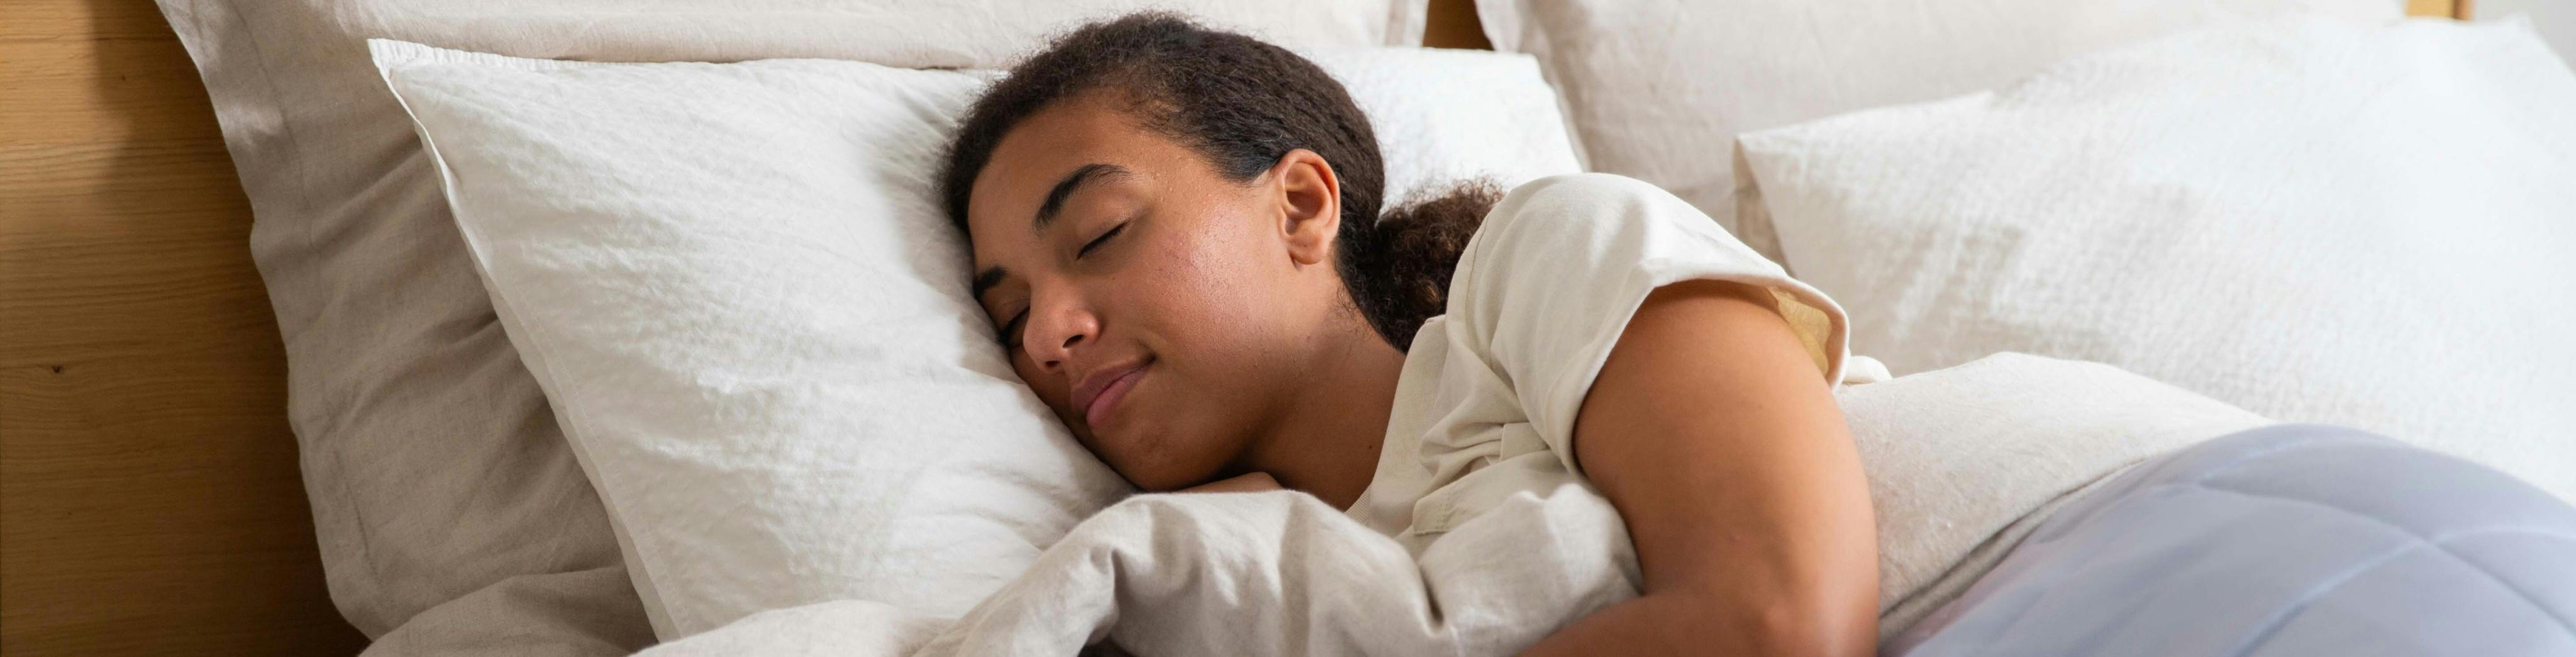 Junges Mädchen beim Schlafen in einem Holzbett mit vielen luftigen Kissen